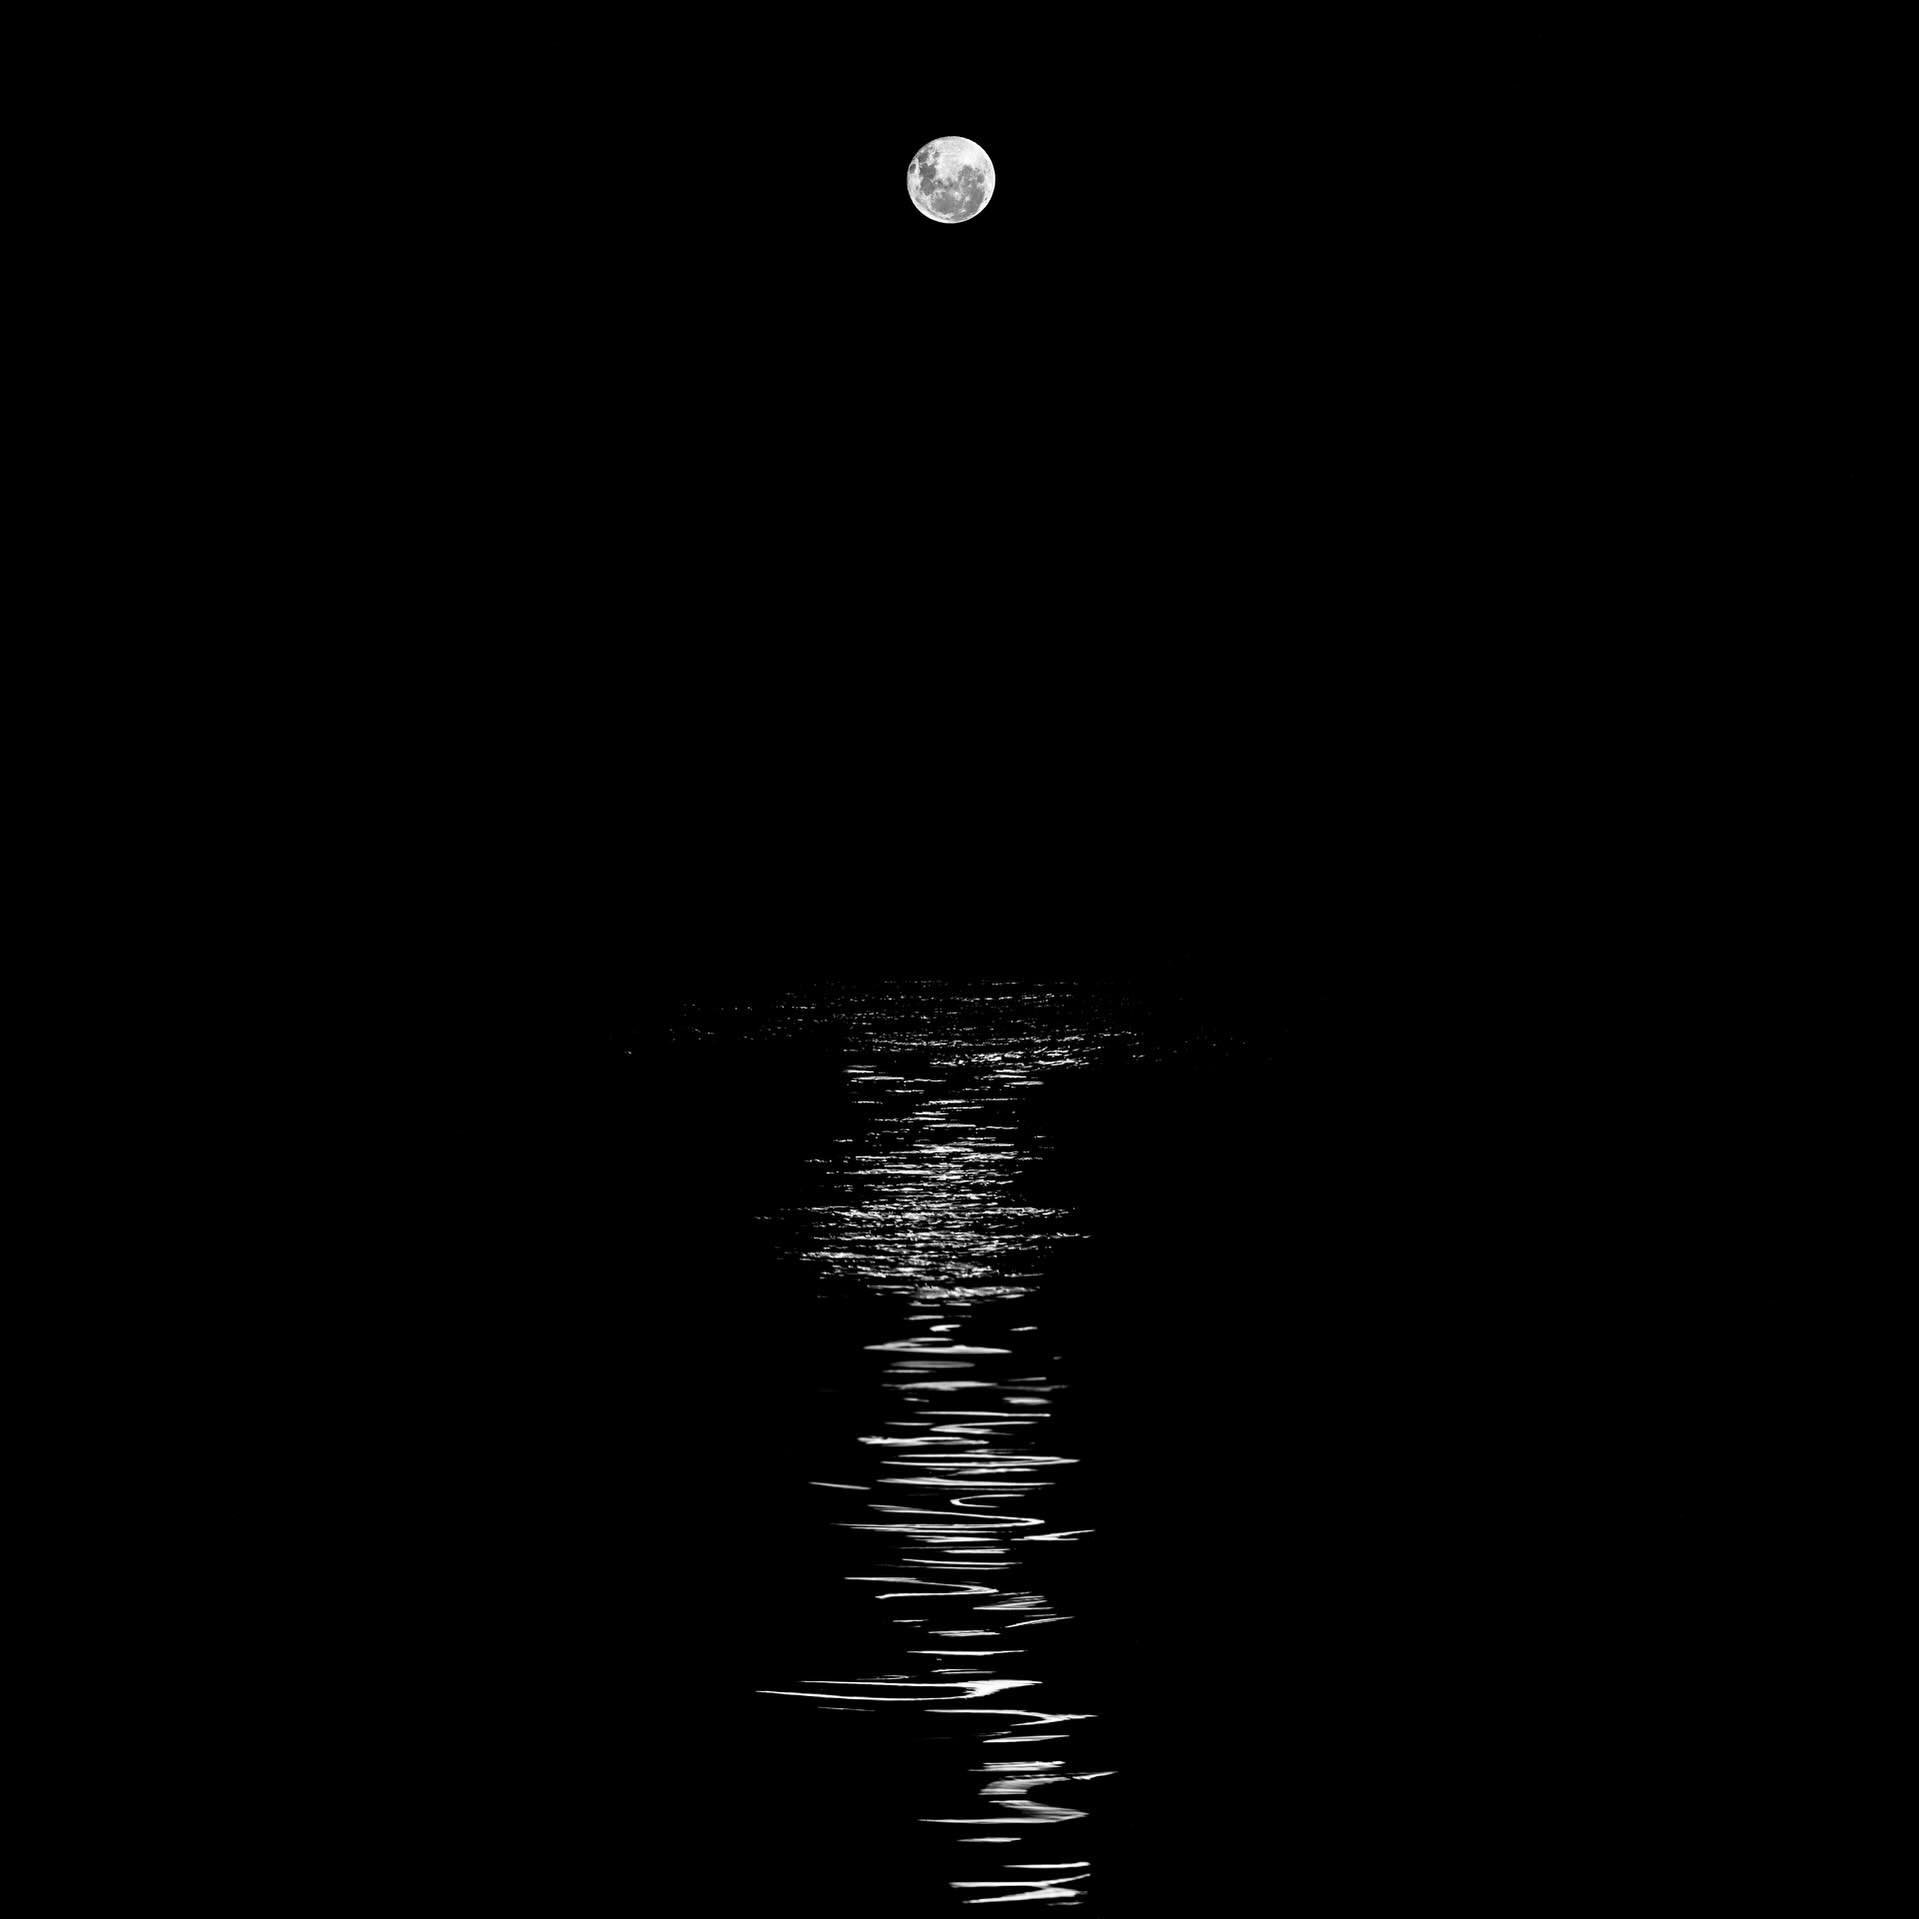 Moonrise - March 26, 2024. 

#moonrise #blackandwhitephotography #reflection #lightmoods #paulfoleyphotographs #astronomy #waterreflection #moonlight